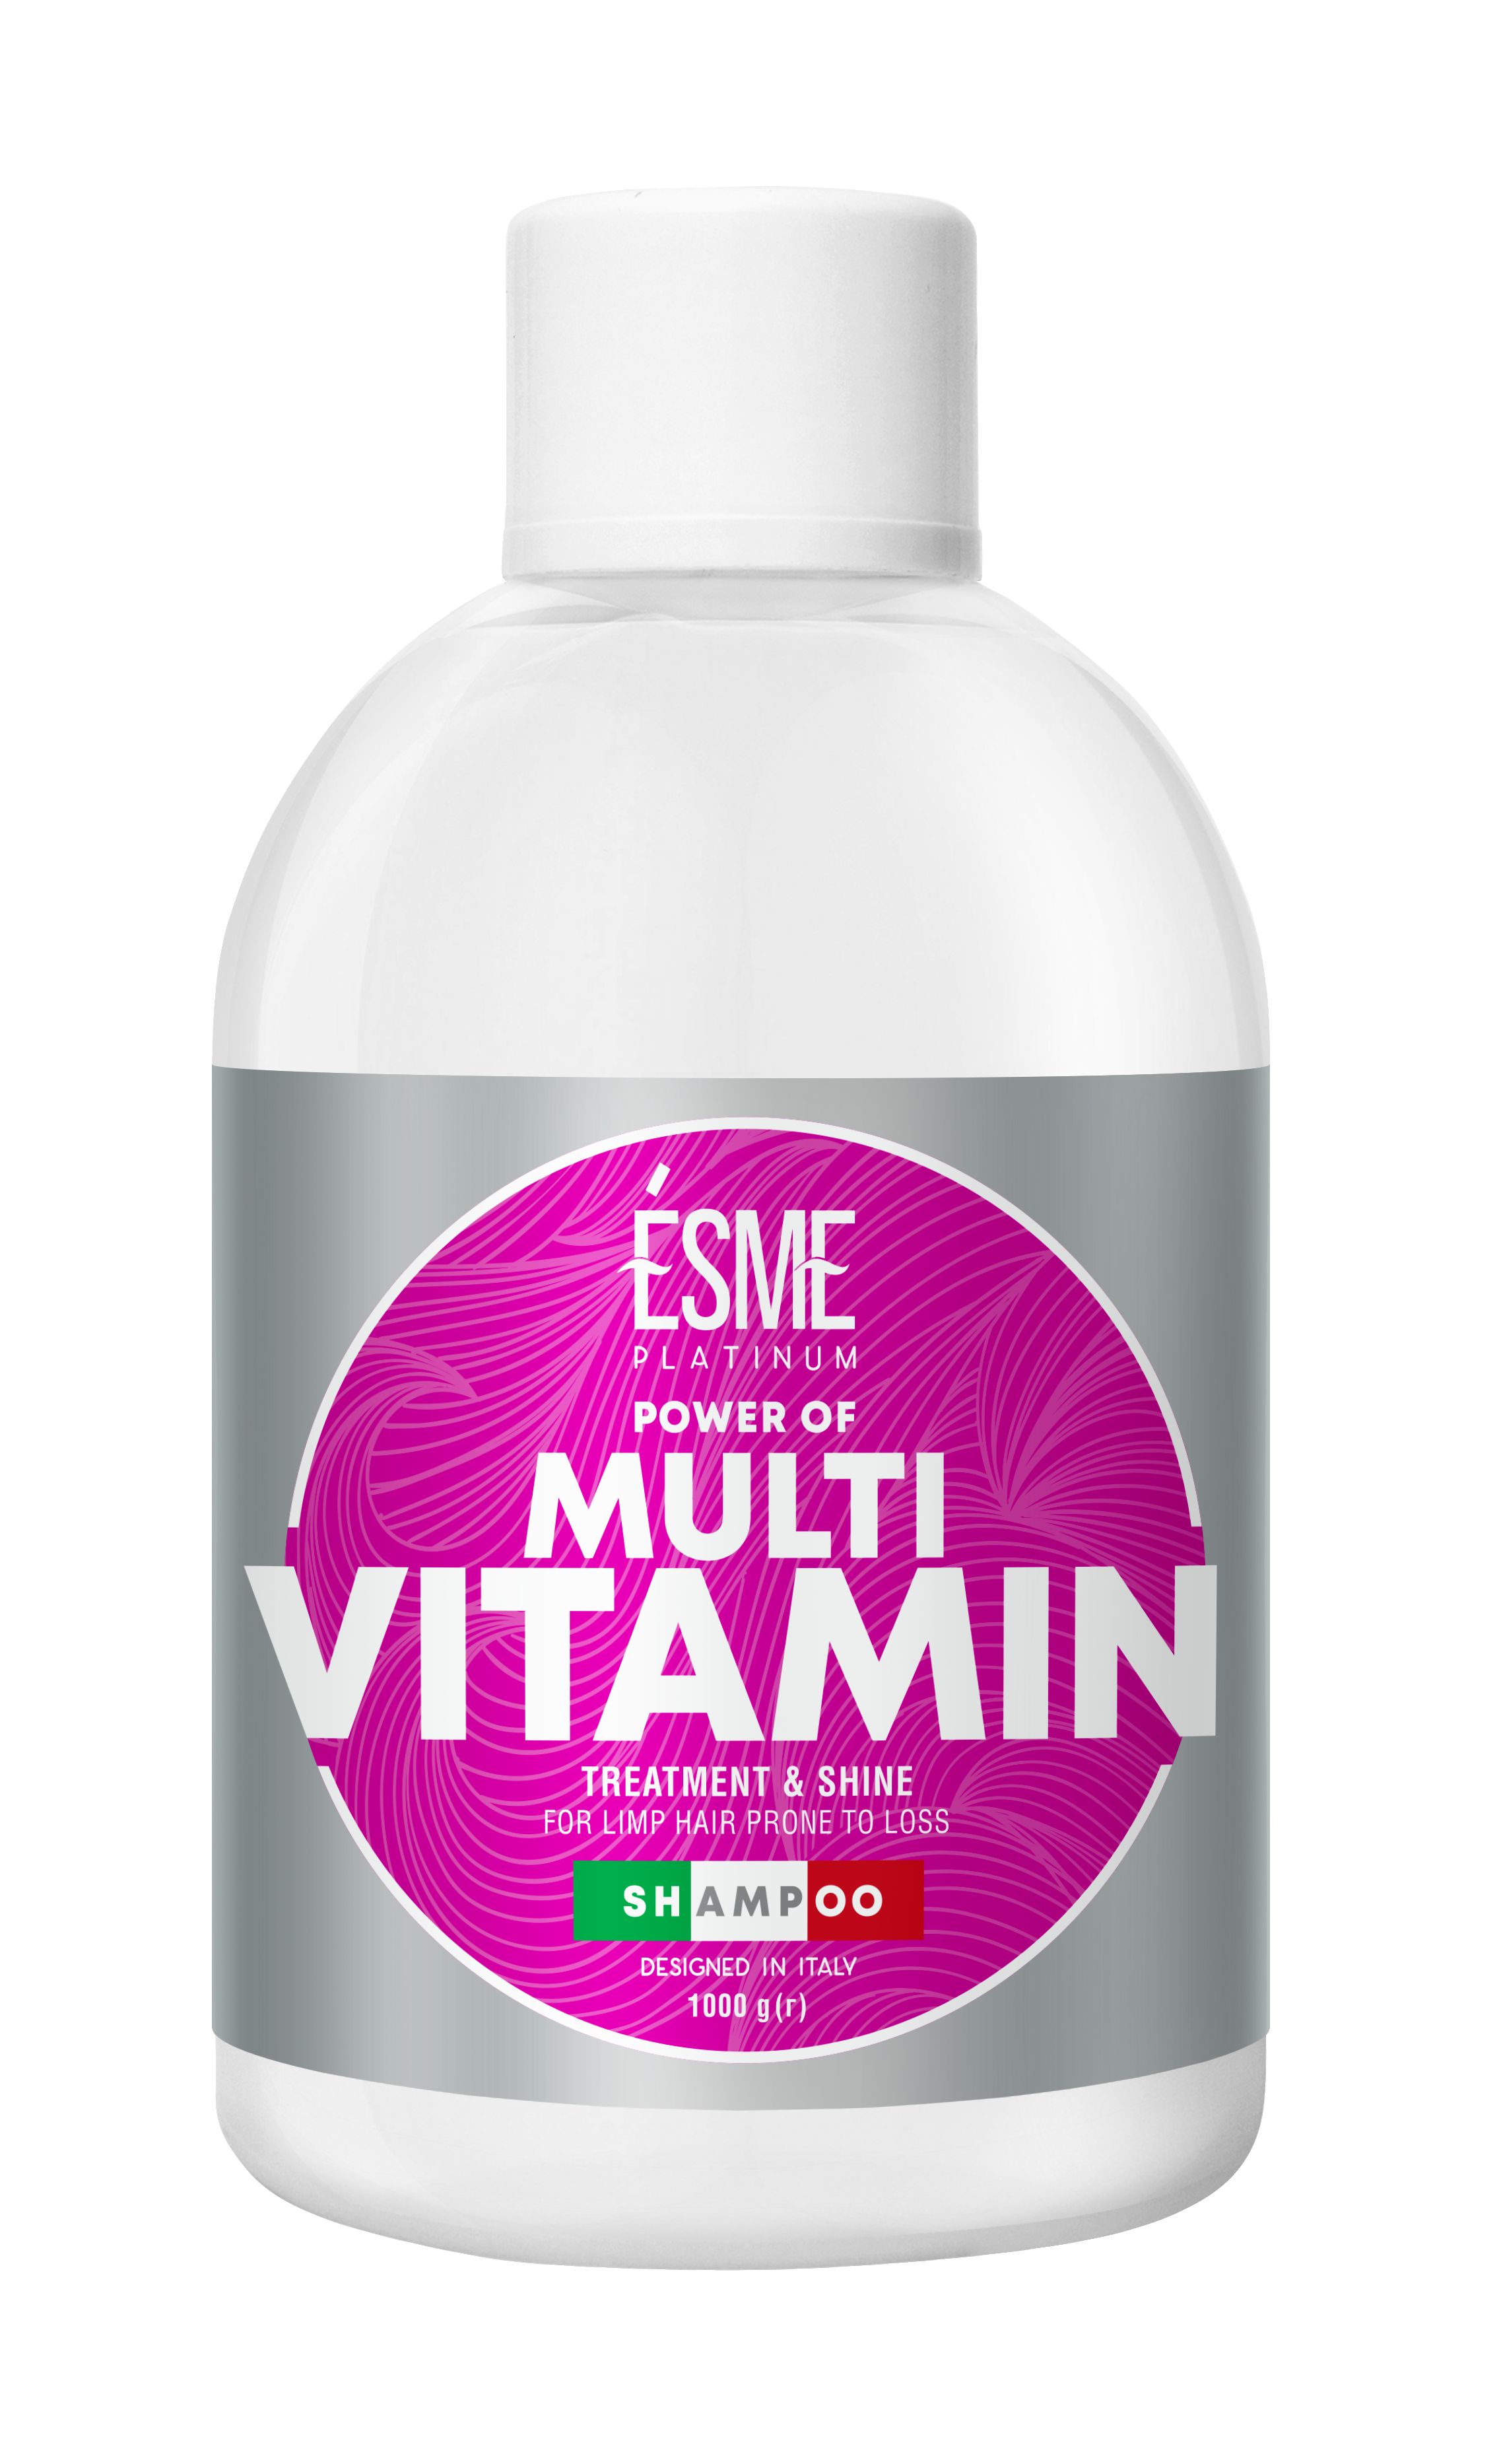 Шампунь Esme Platinum Multivitamin с витаминным комплексом, для слабых волос, 1000 мл - фото 1